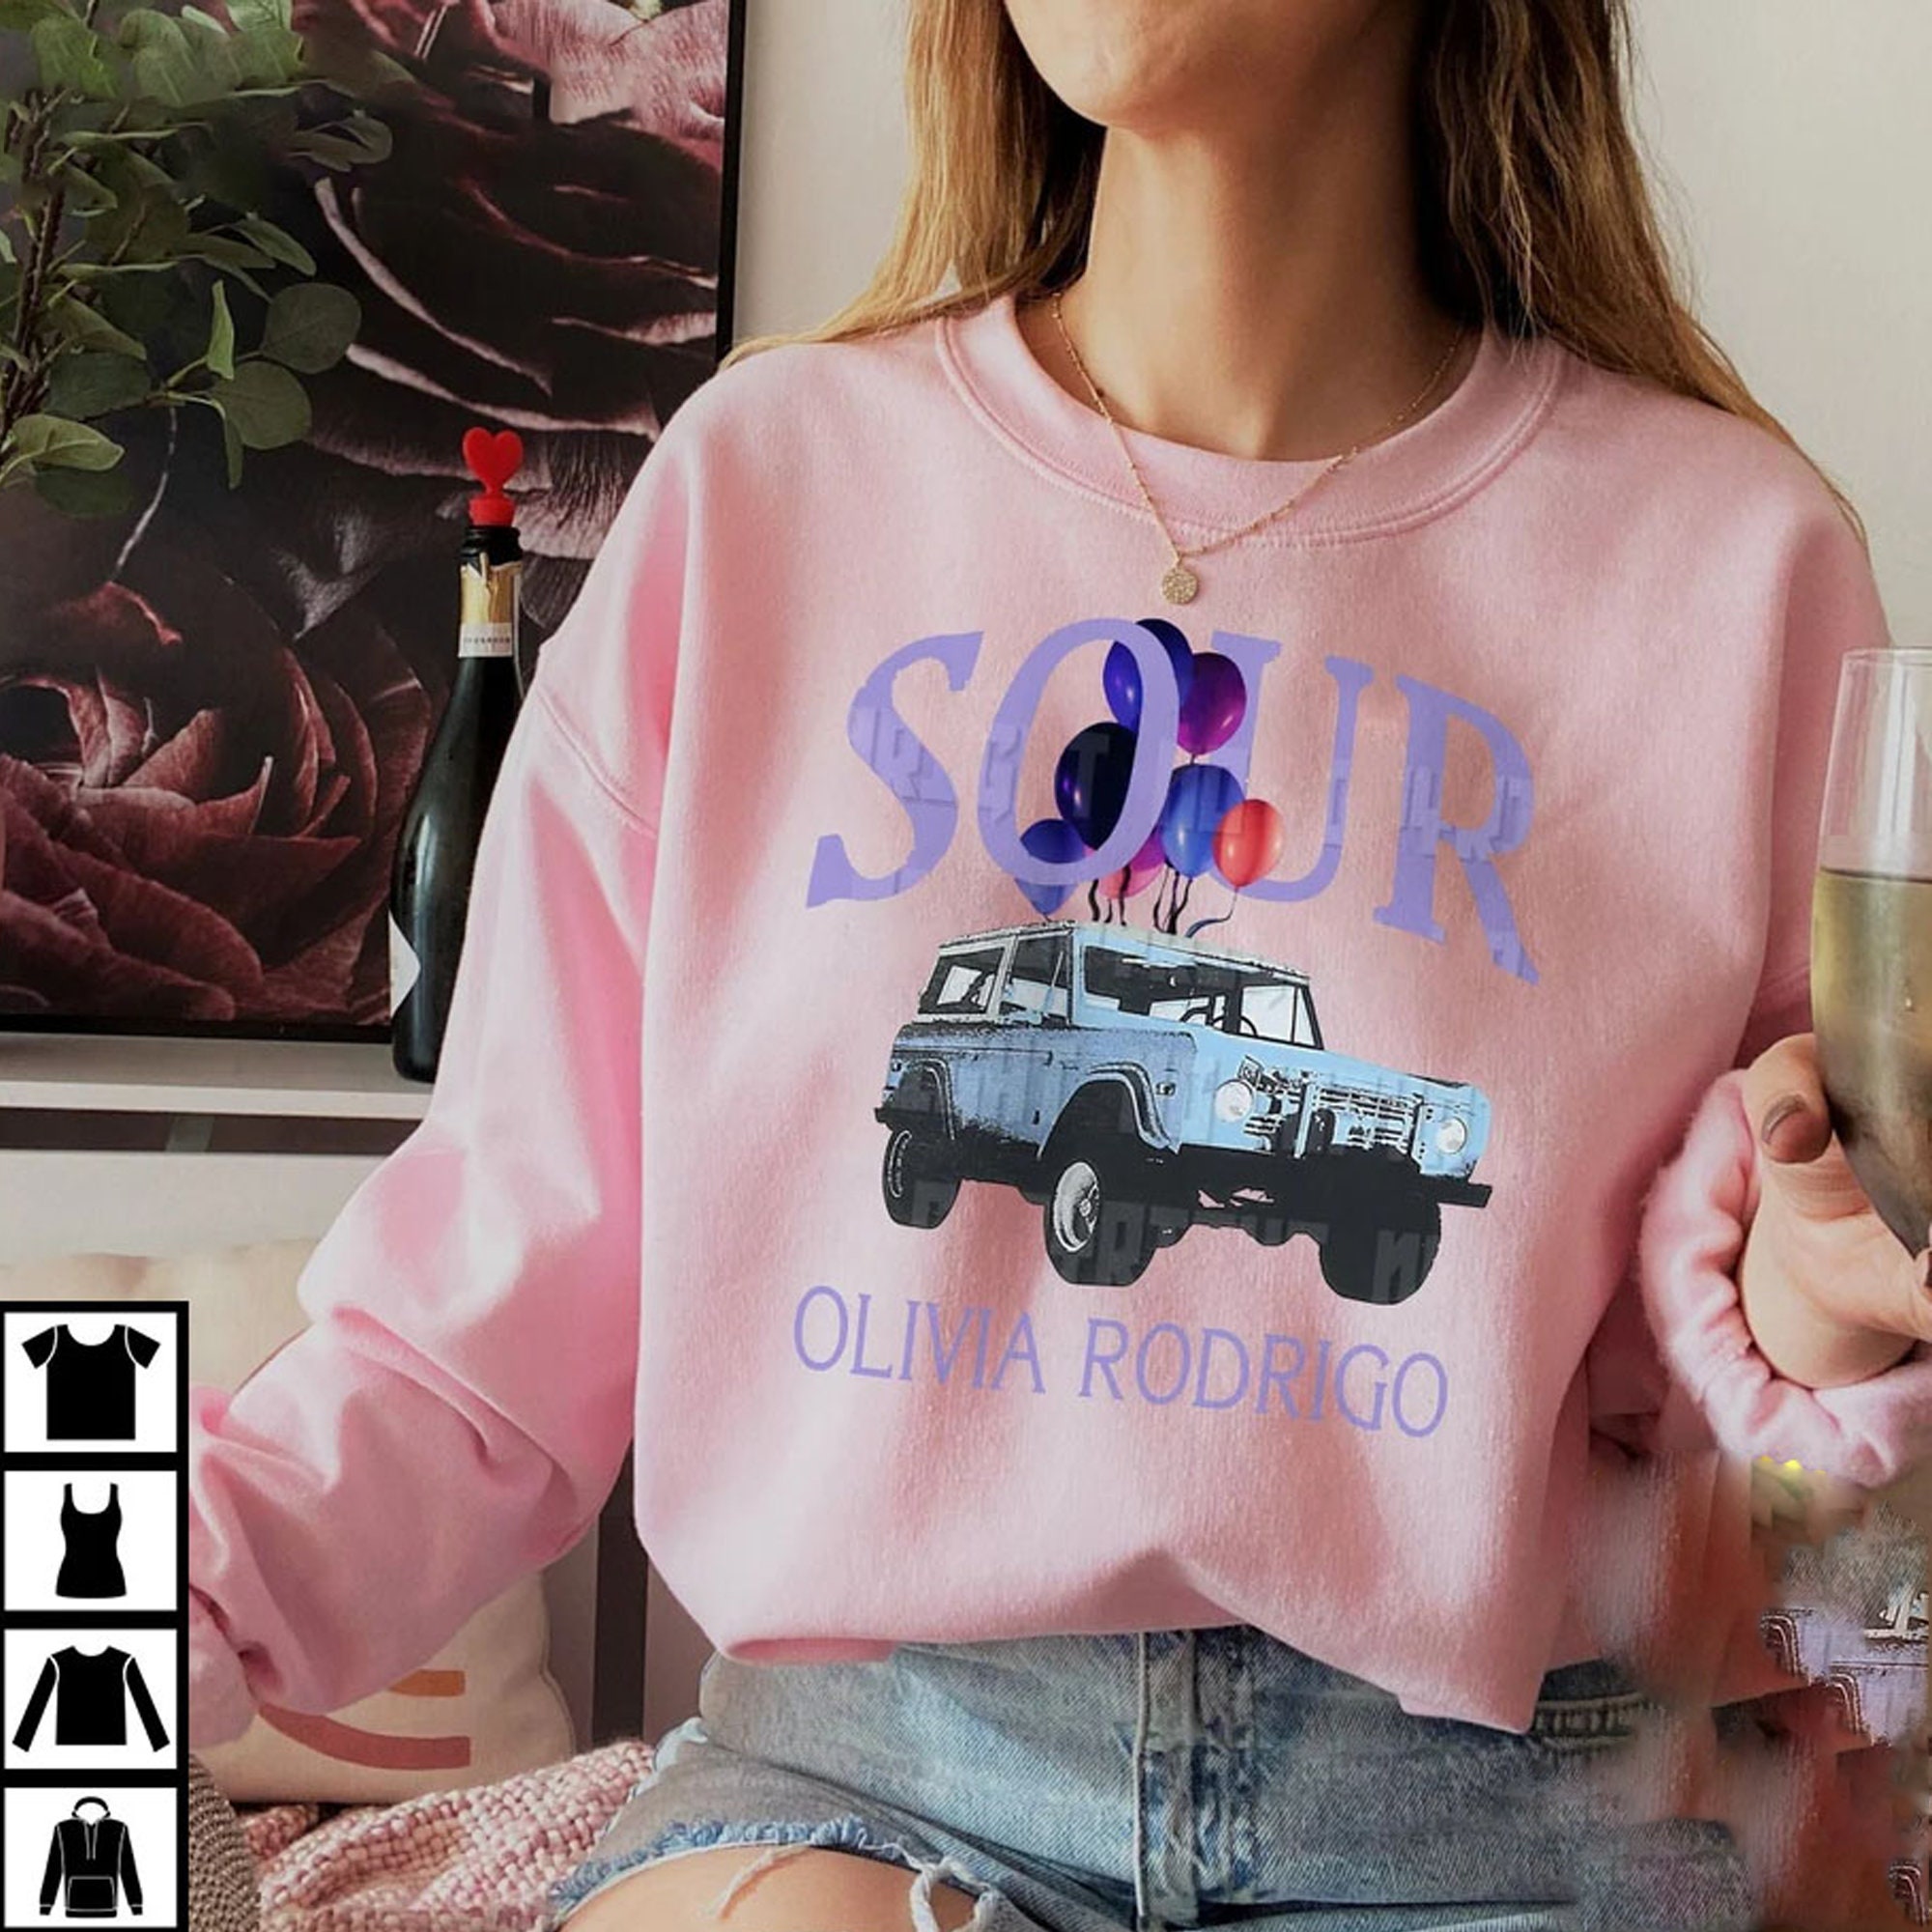 Sour Olivia Rodrigo Car Graphic Unisex Sweatshirt